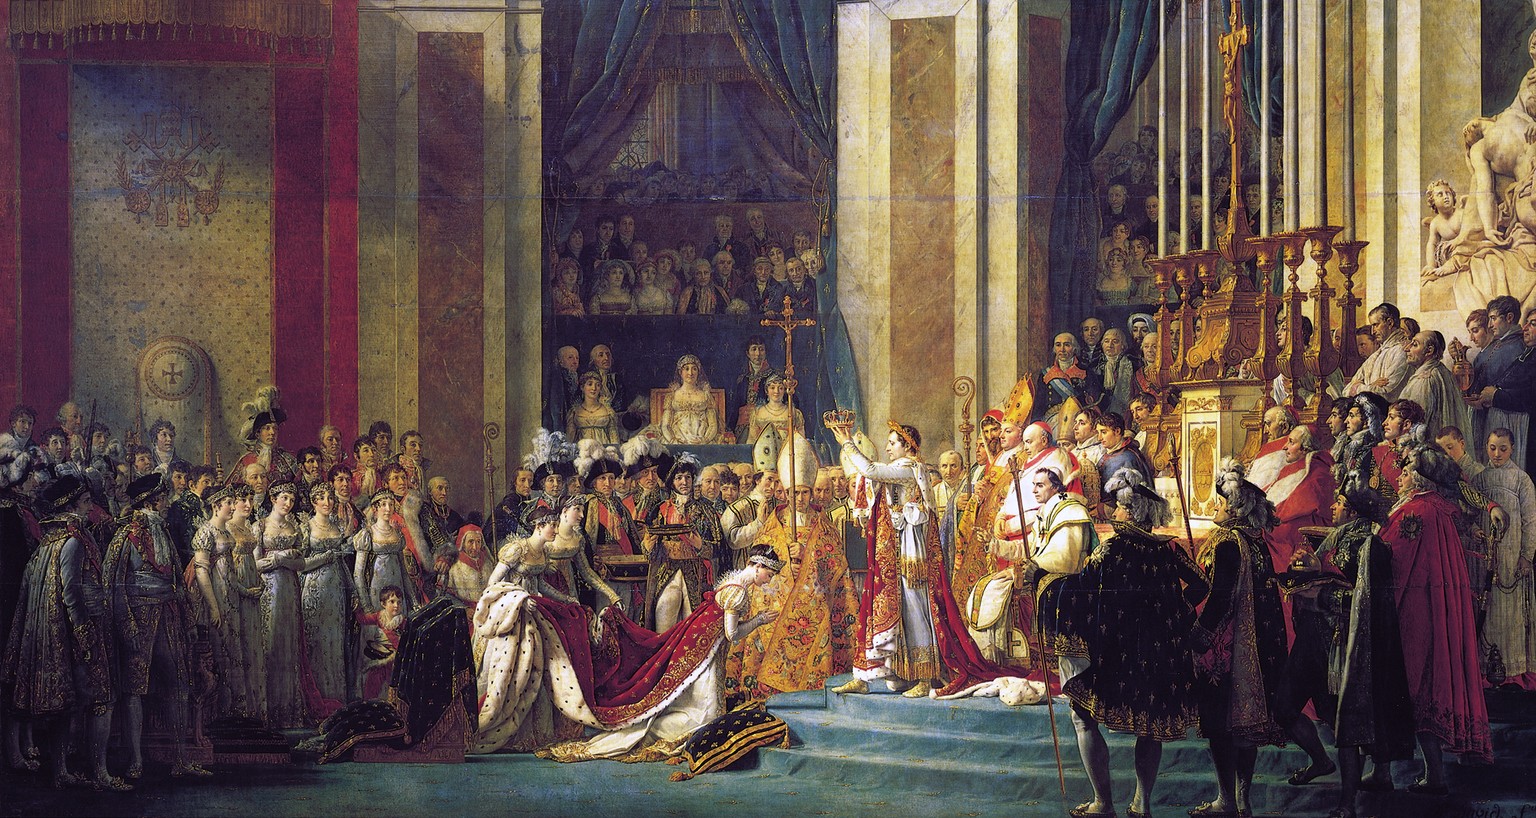 Nur 15 Jahre nach der Revolution feiert Frankreich seinen neuen Herrscher von Gottes Gnaden: Die Krönung Napoleons in der Notre Dame in Paris im Dezember 1804. Napoleon (mit Lorbeerkranz) ist dabei, s ...